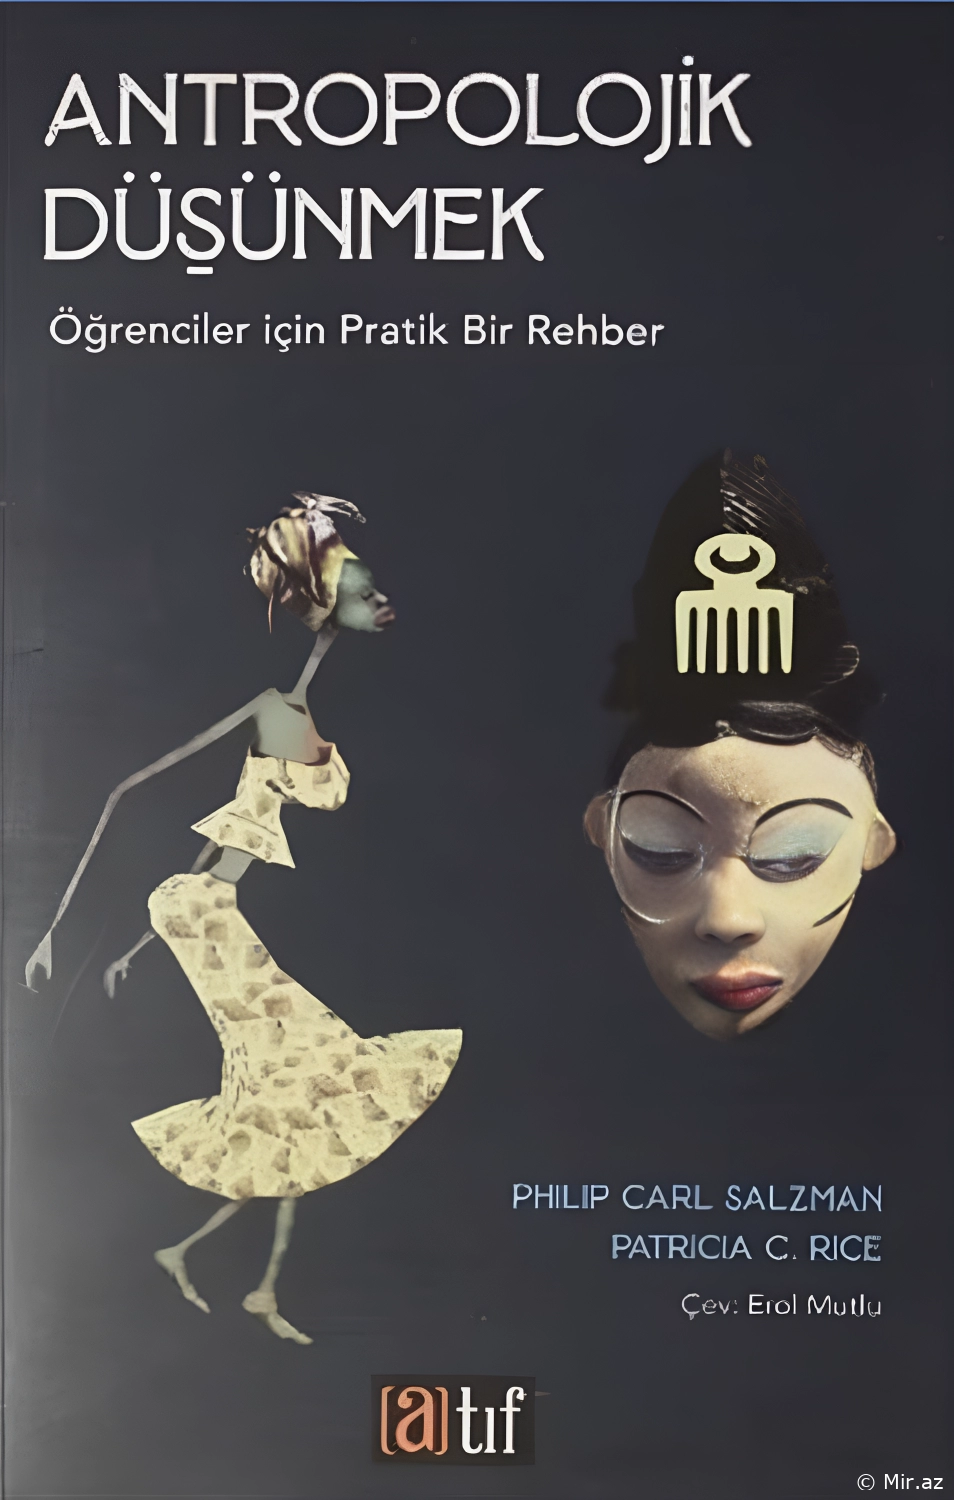 Philip Carl Salzman "Antropolojik Düşünmek" PDF